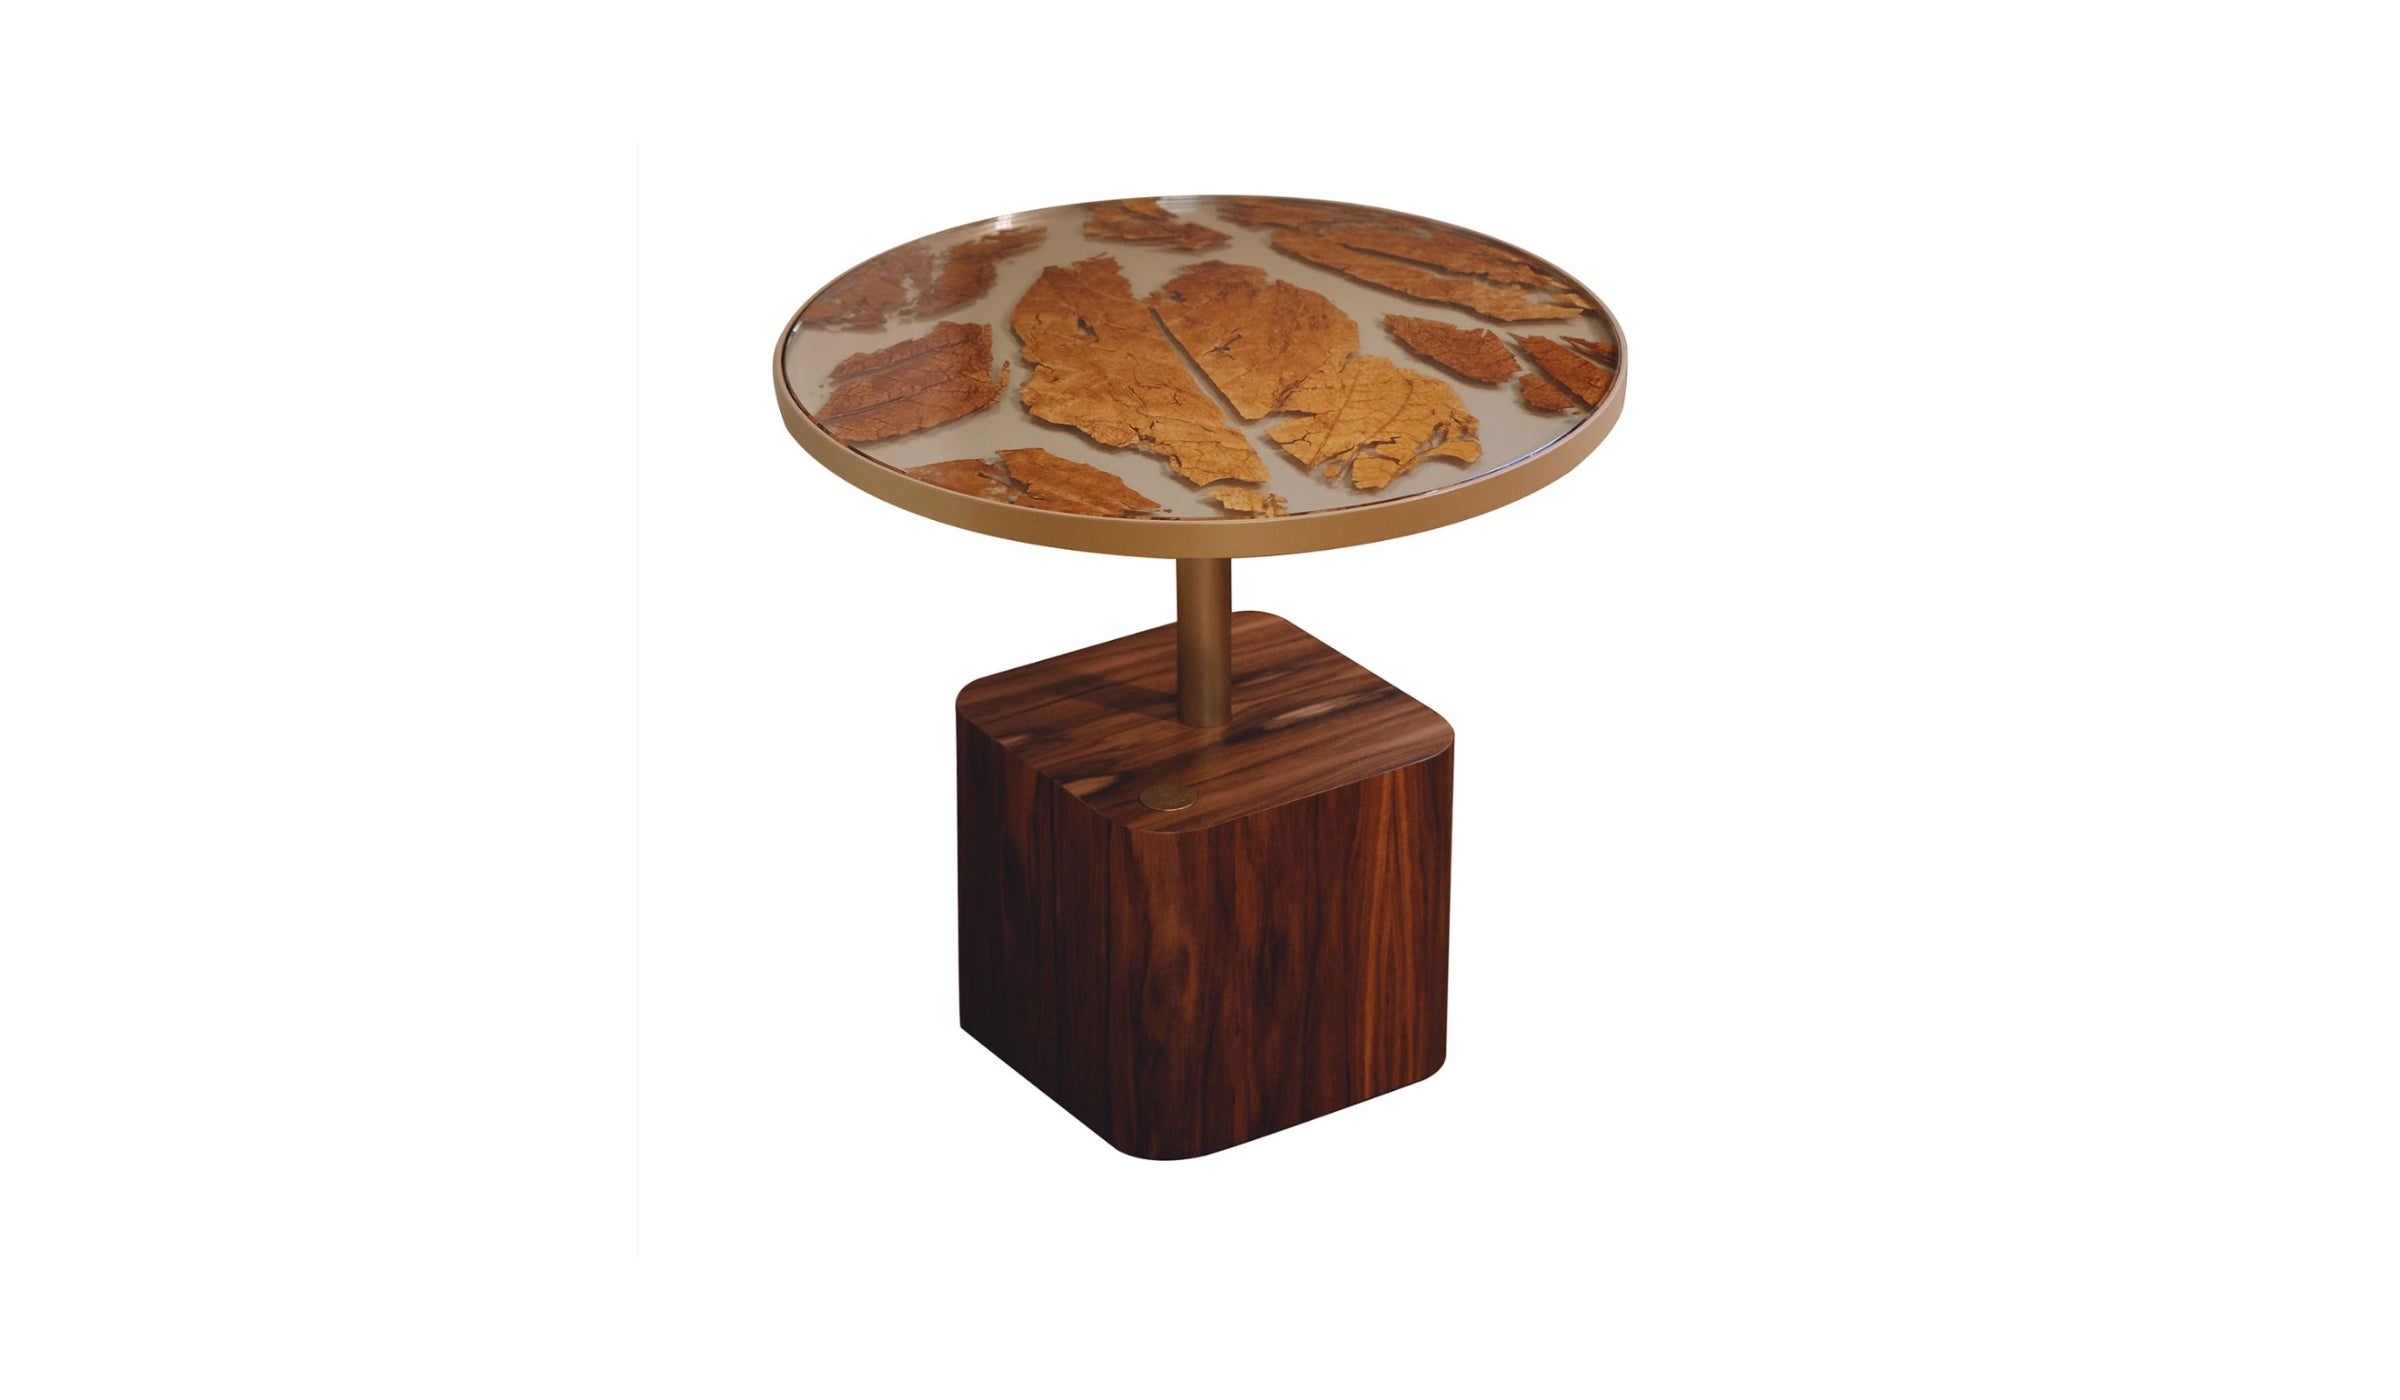 Table d'appoint-Catarina - Table d'appoint en frêne, plateau de verre incrusté de feuilles de tabac, M--NOVINEA-MARGART